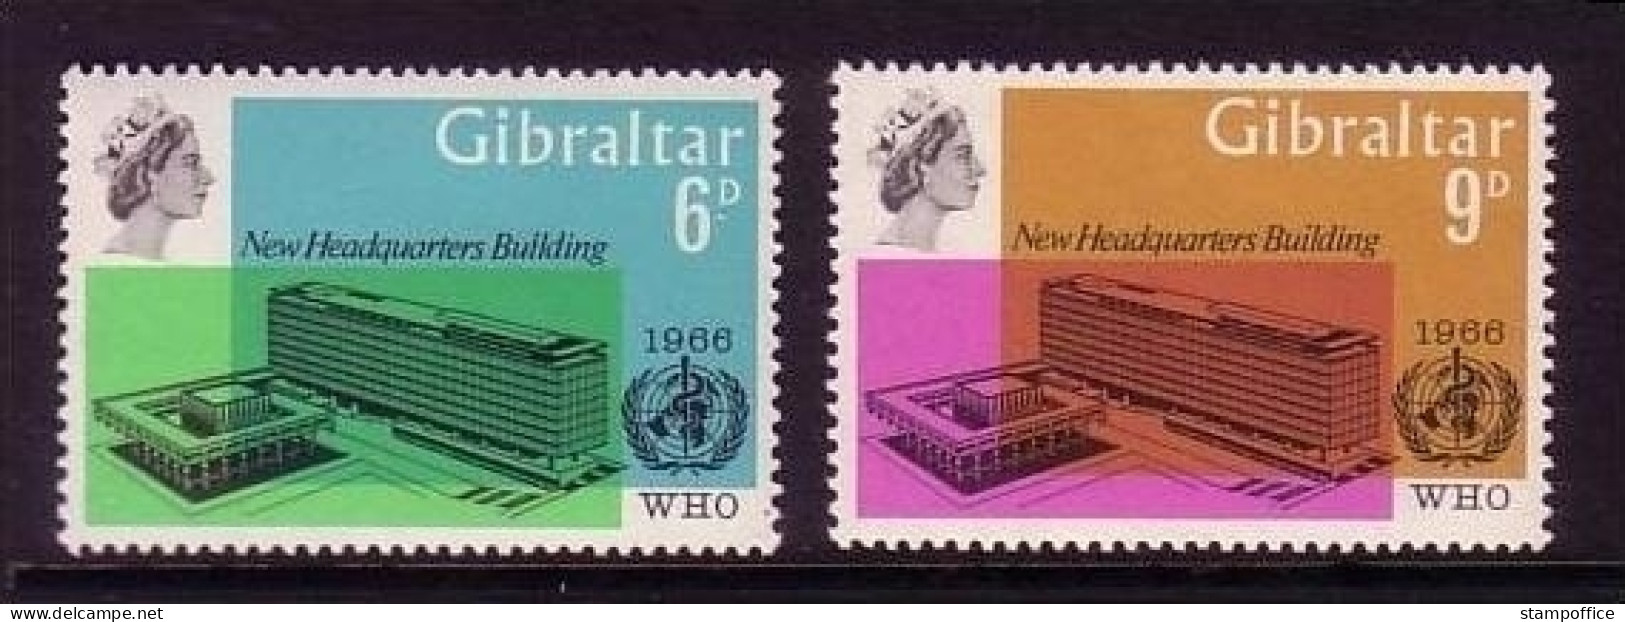 GIBRALTAR MI-NR. 182-183 POSTFRISCH(MINT) WELTGESUNDHEITSORGANISATION WHO - Gibraltar